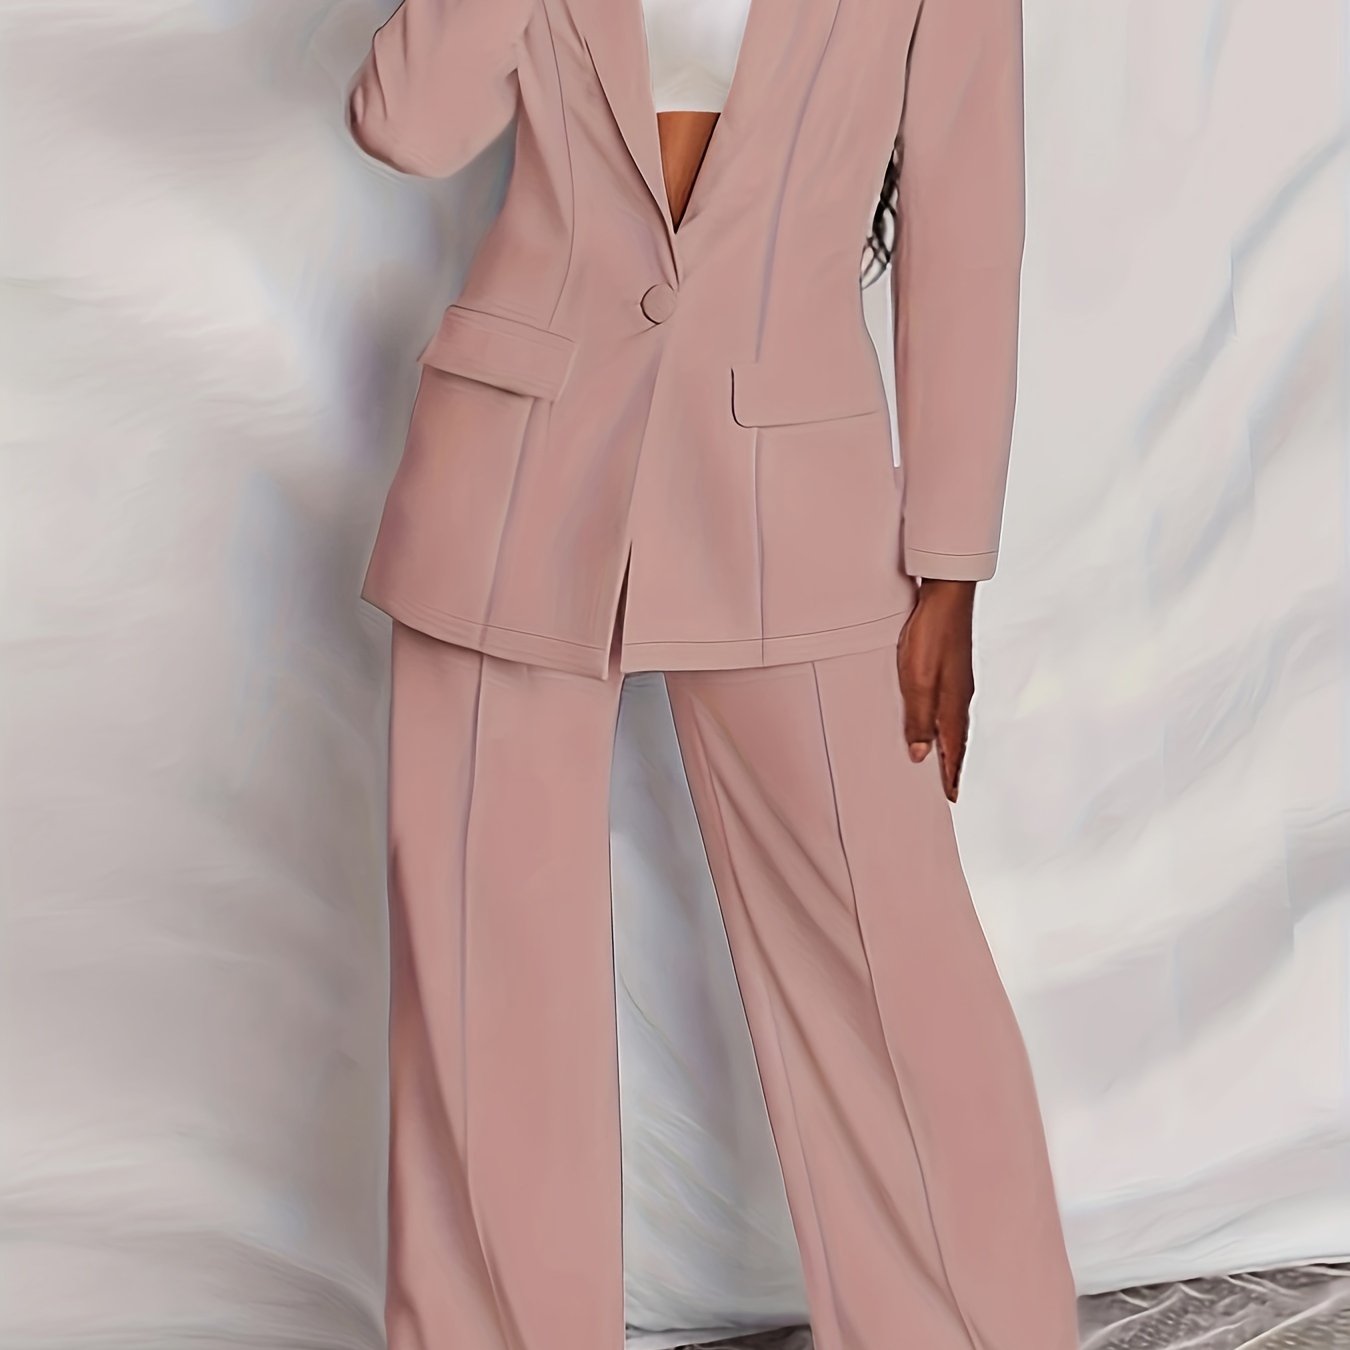 Antmvs Plus Size Casual Suit Set, Women's Plus Solid Long Sleeve Single Breast Button Lapel Collar Suit Coat & Wide Leg Pants Suit Two Piece Set